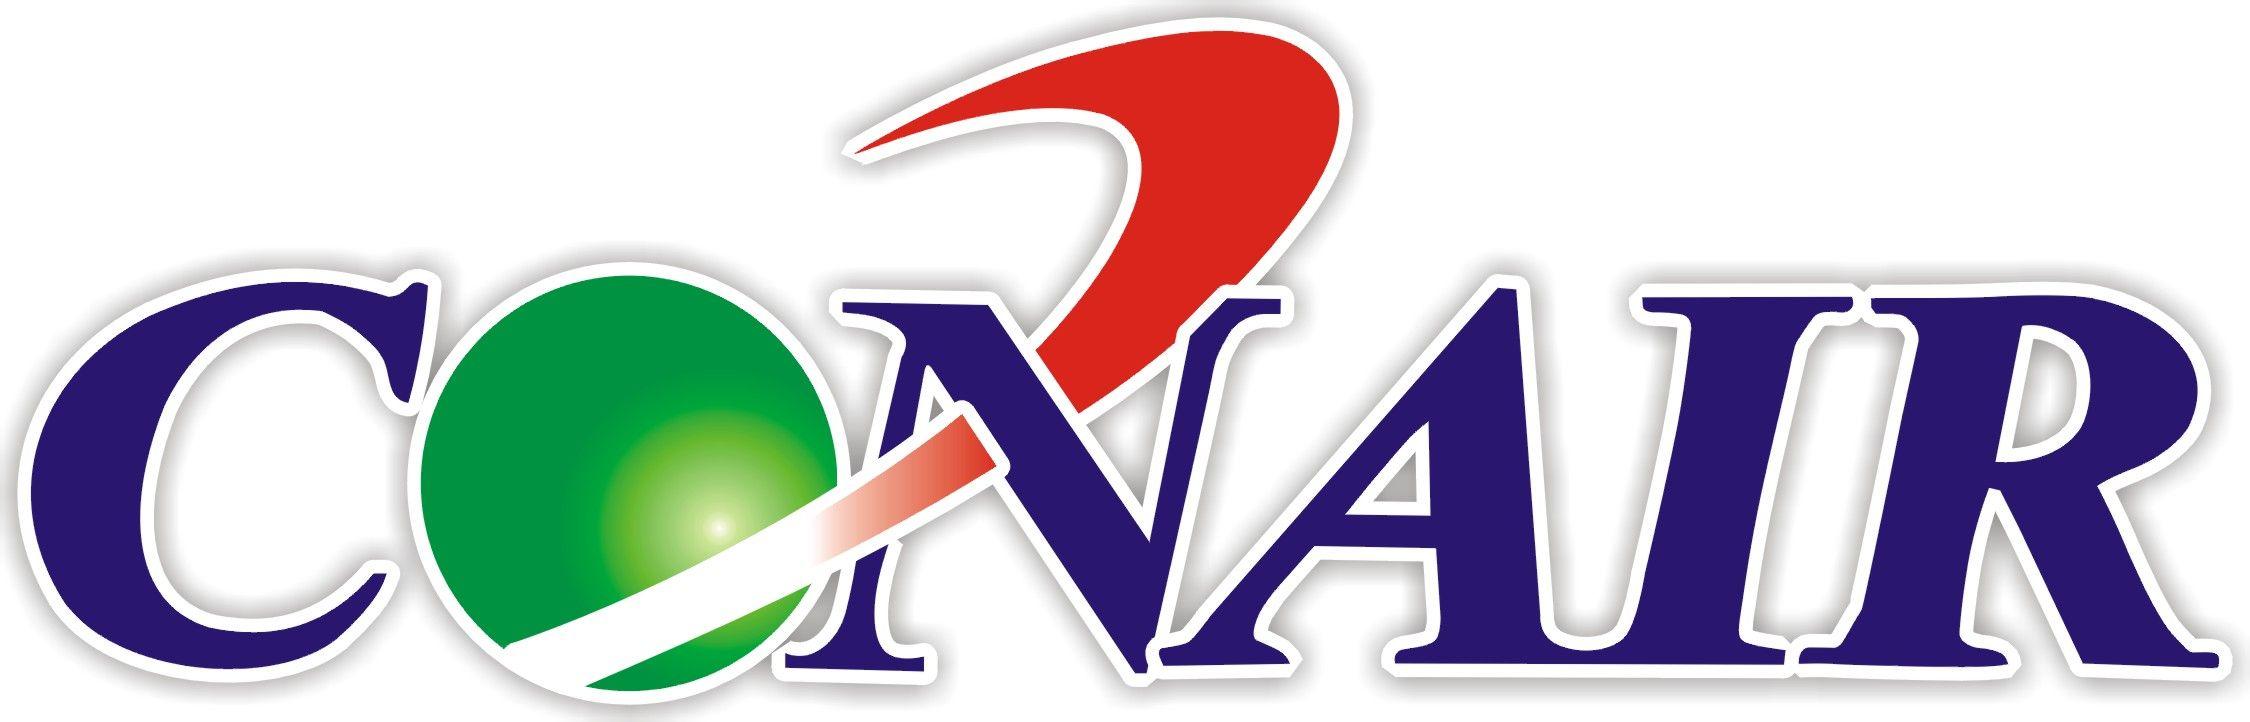 Conair Logo - Conair Logos